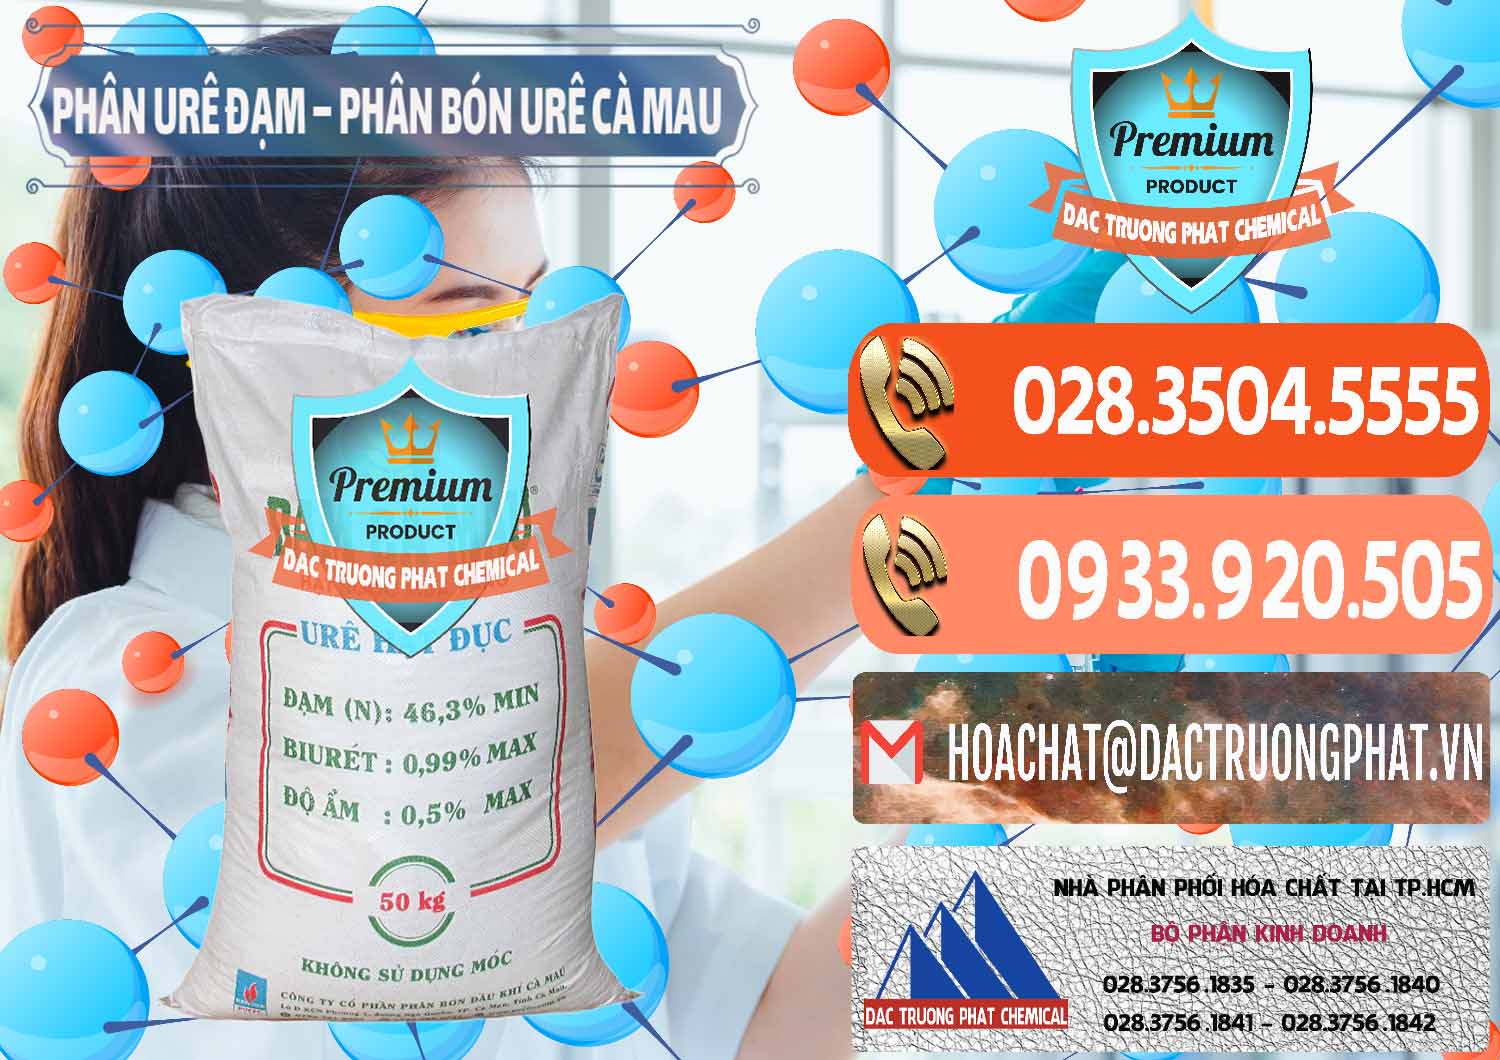 Cty kinh doanh _ bán Phân Urê Đạm – Phân Bón Urê Cà Mau Việt Nam - 0192 - Công ty kinh doanh & bán hóa chất tại TP.HCM - hoachatmientay.com